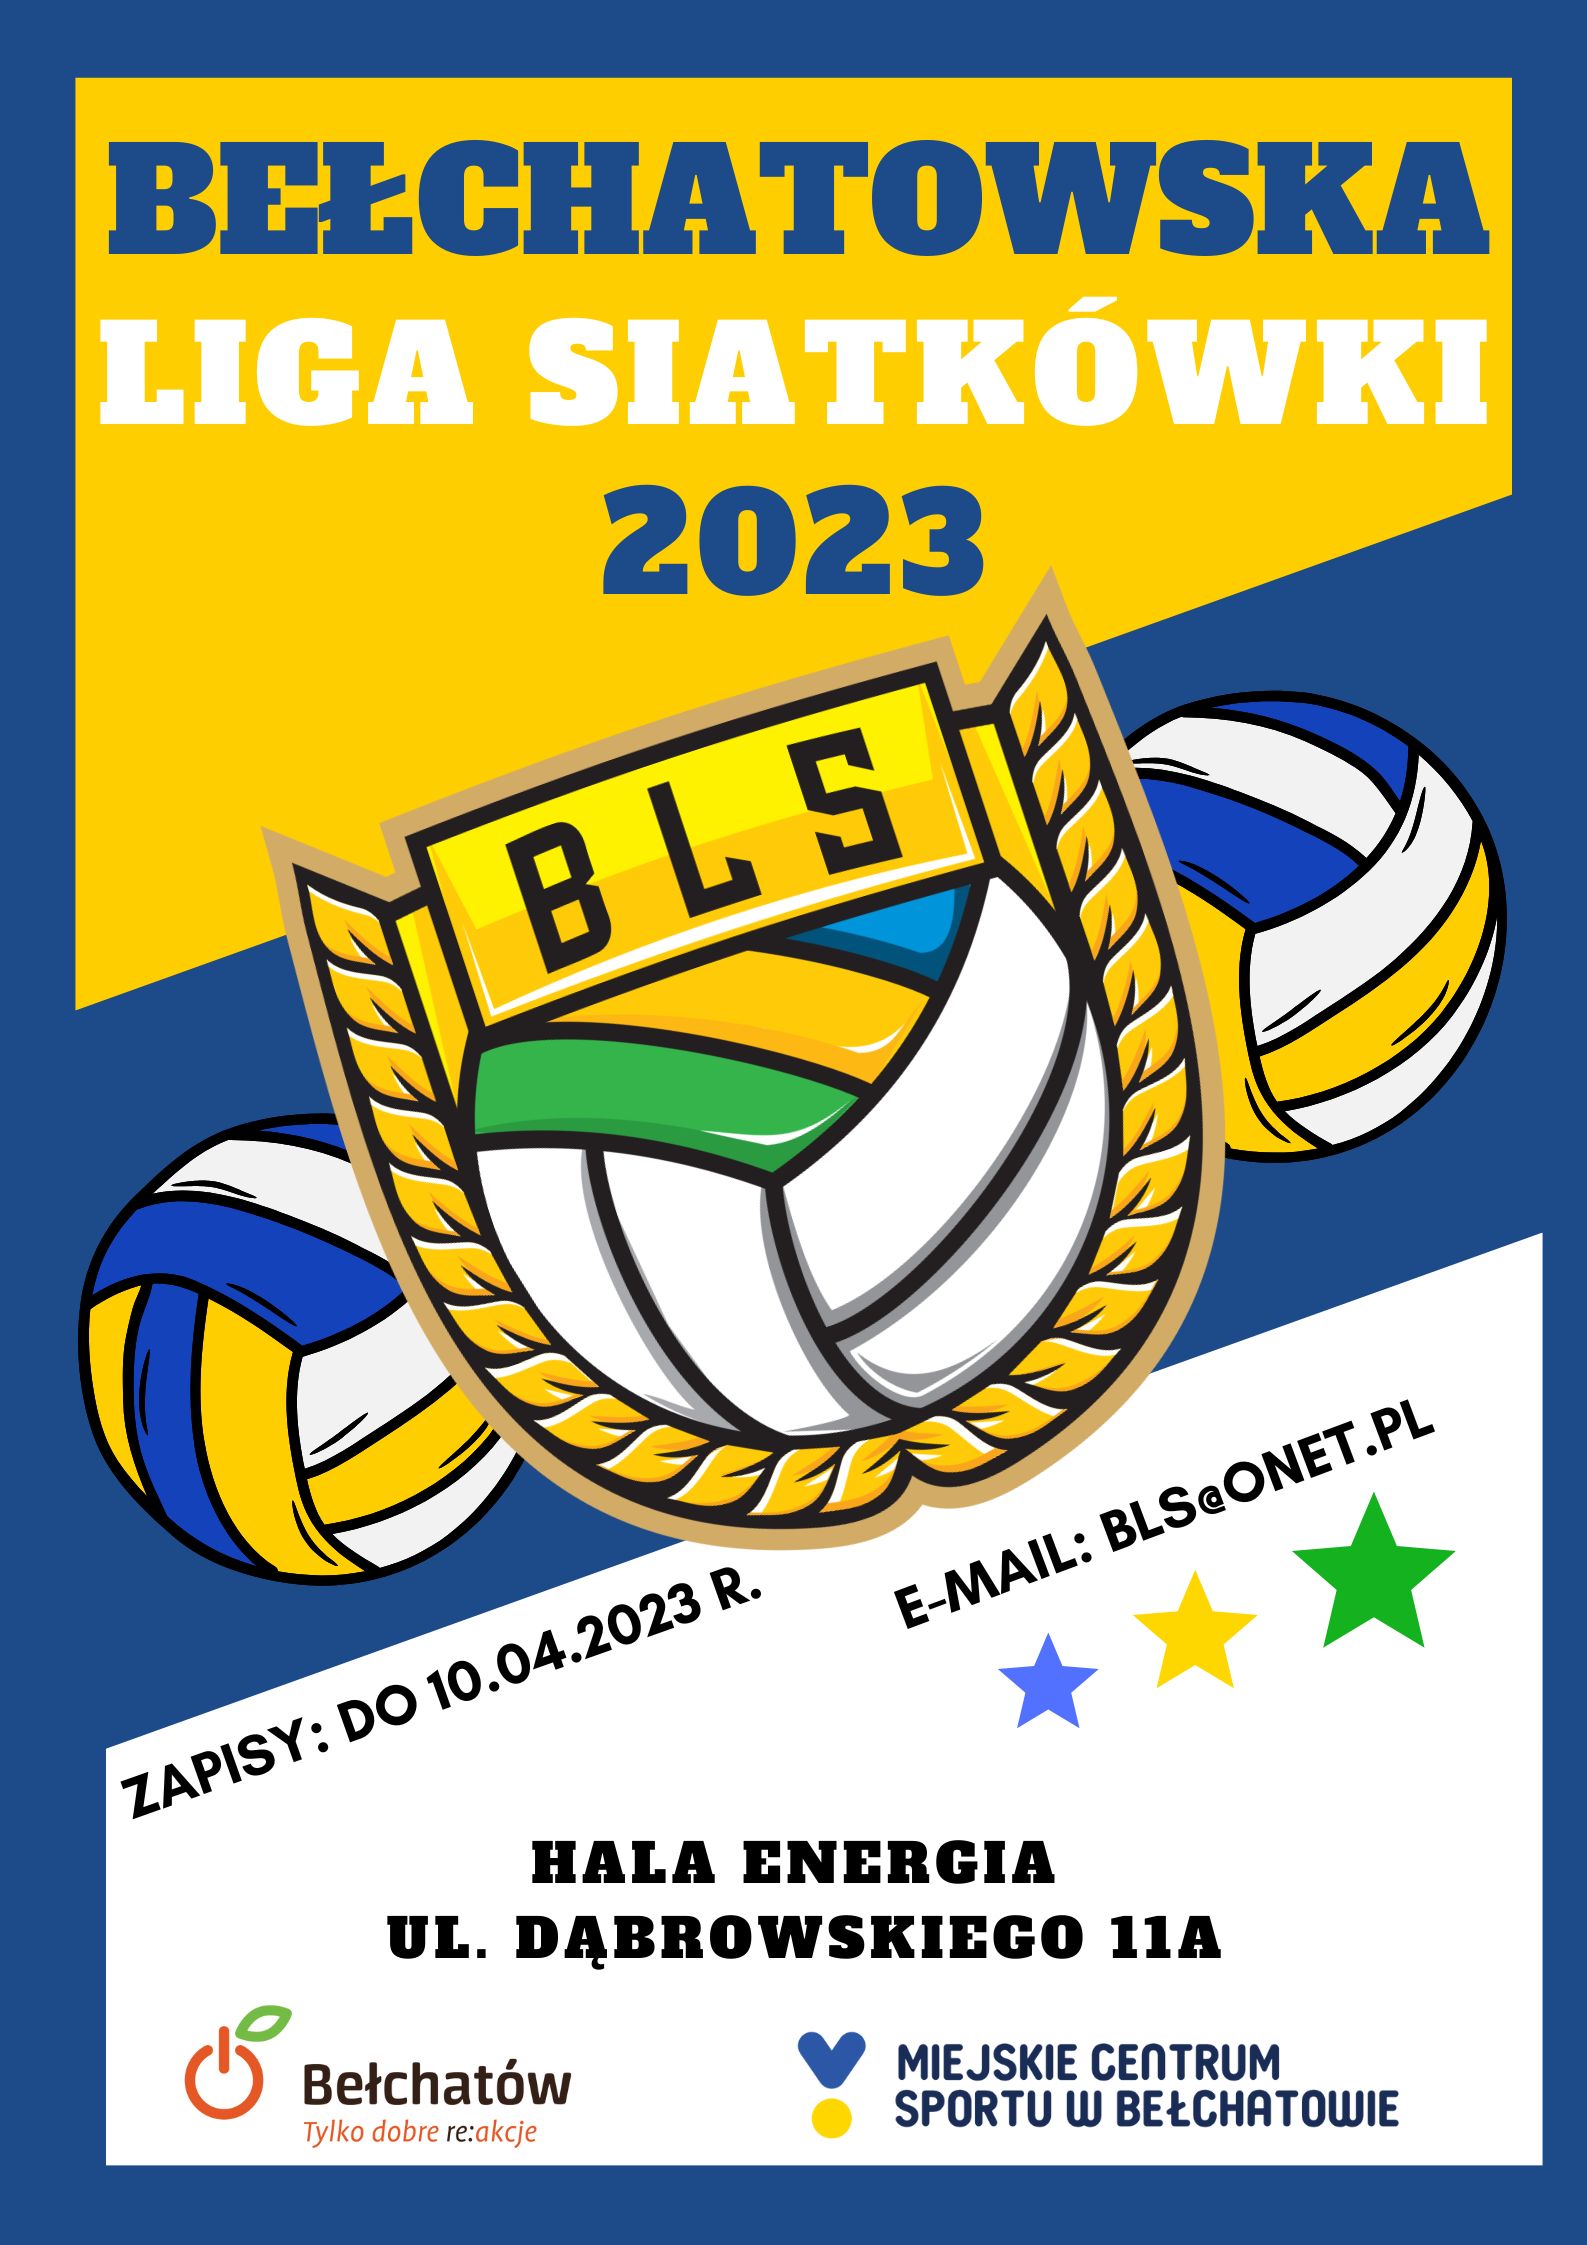 grafika przedstawia plakat promujący Bełchatowską Ligę Siatkówki 2023